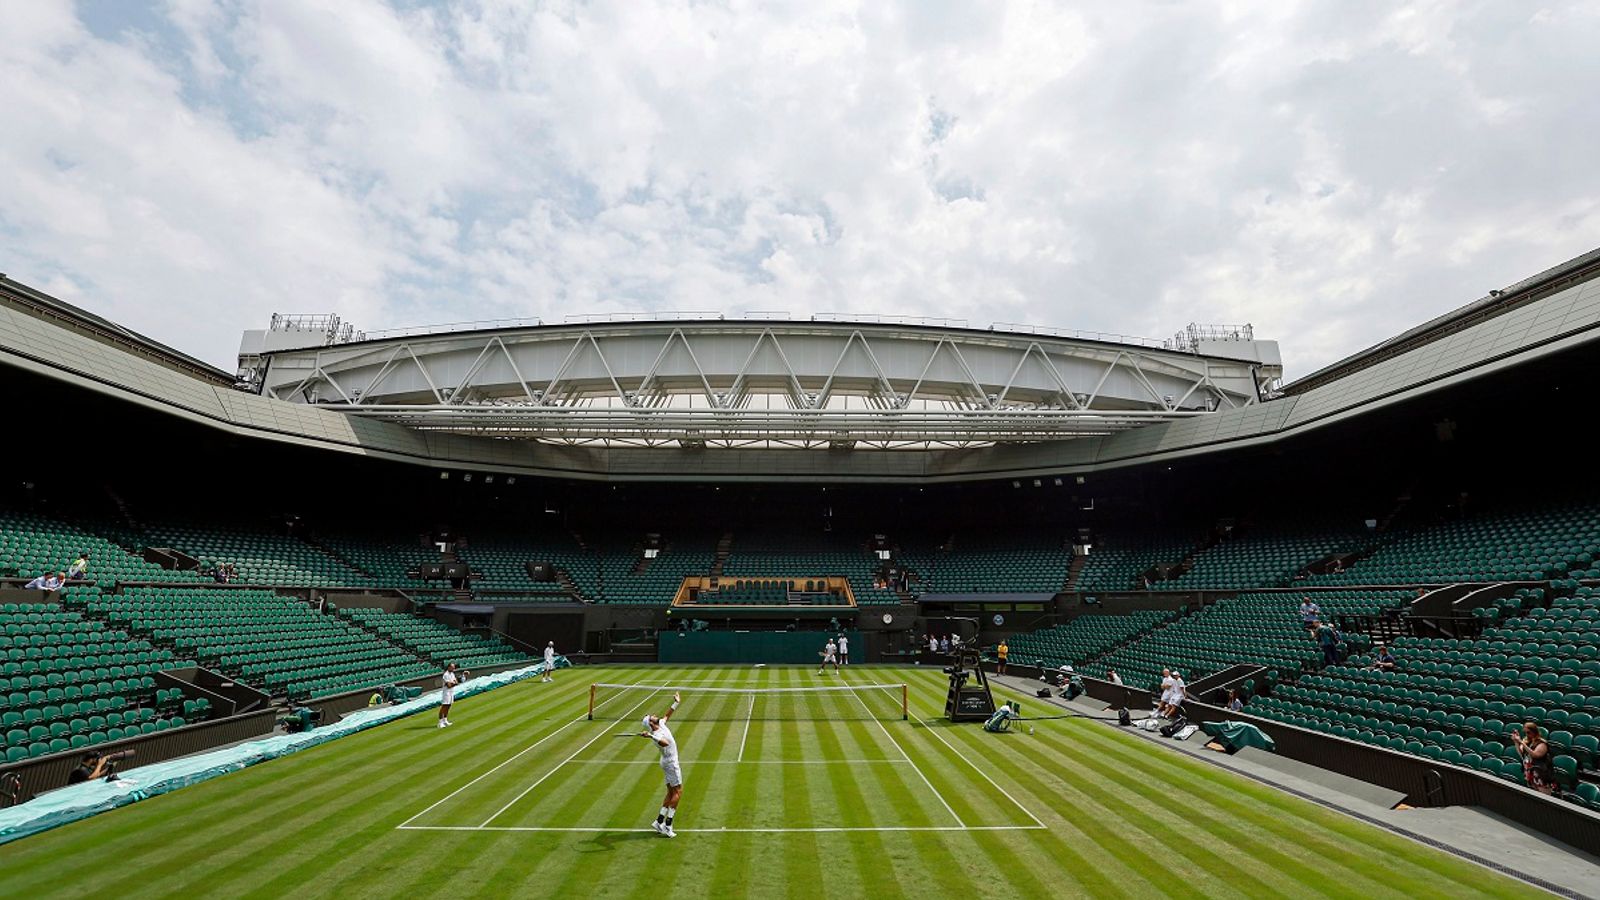 Nadal and Djokovic trainieren auf dem Centre Court Wimbledon bricht mit Tradition Tennis News Sky Sport